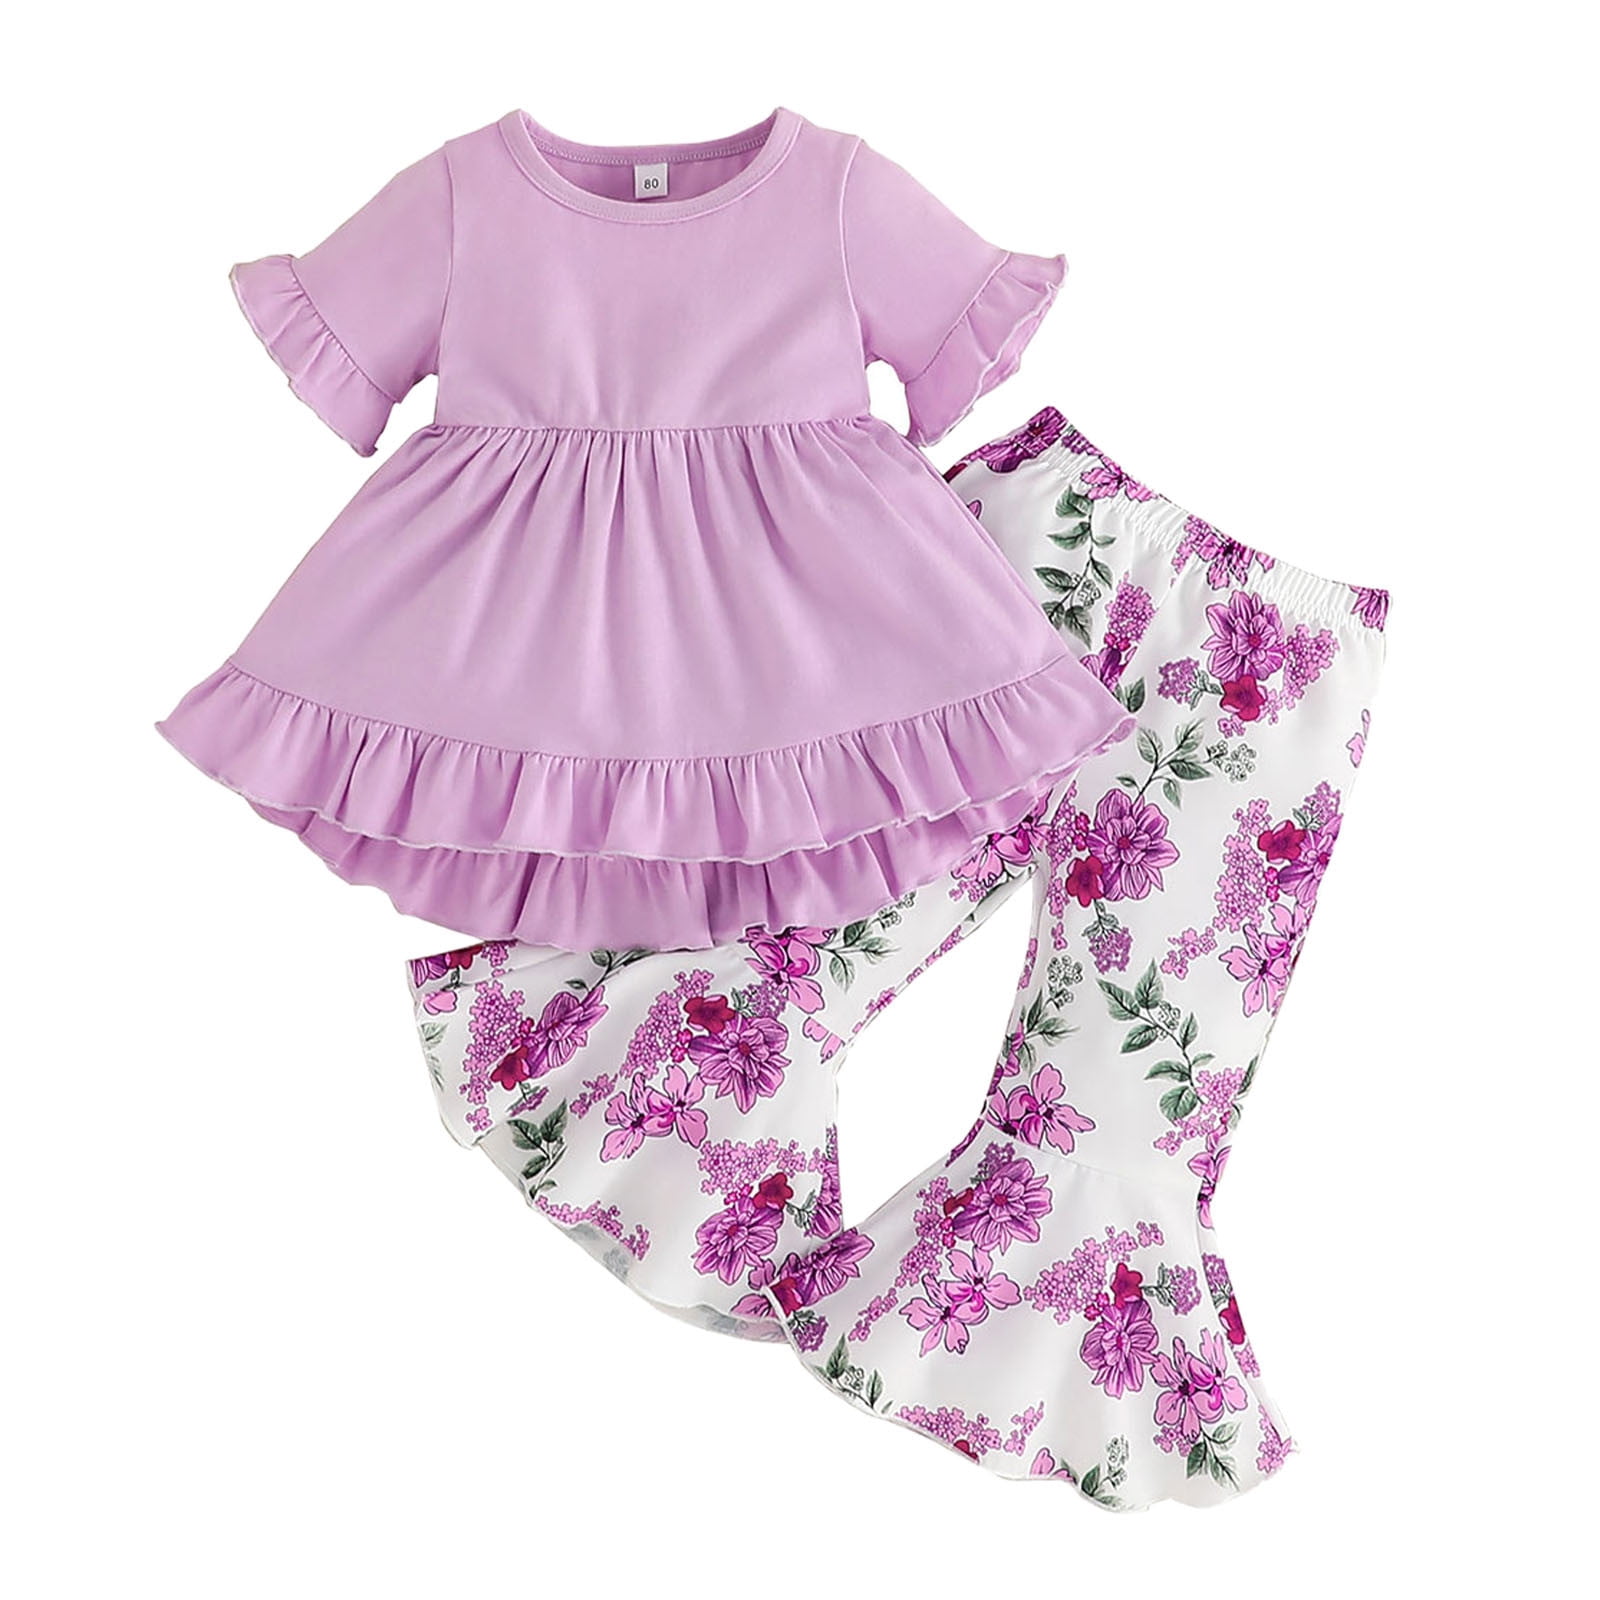 ZHAGHMIN Cute Outfit Girls Short Sleeve Ruffles Tops Summer Flowers ...